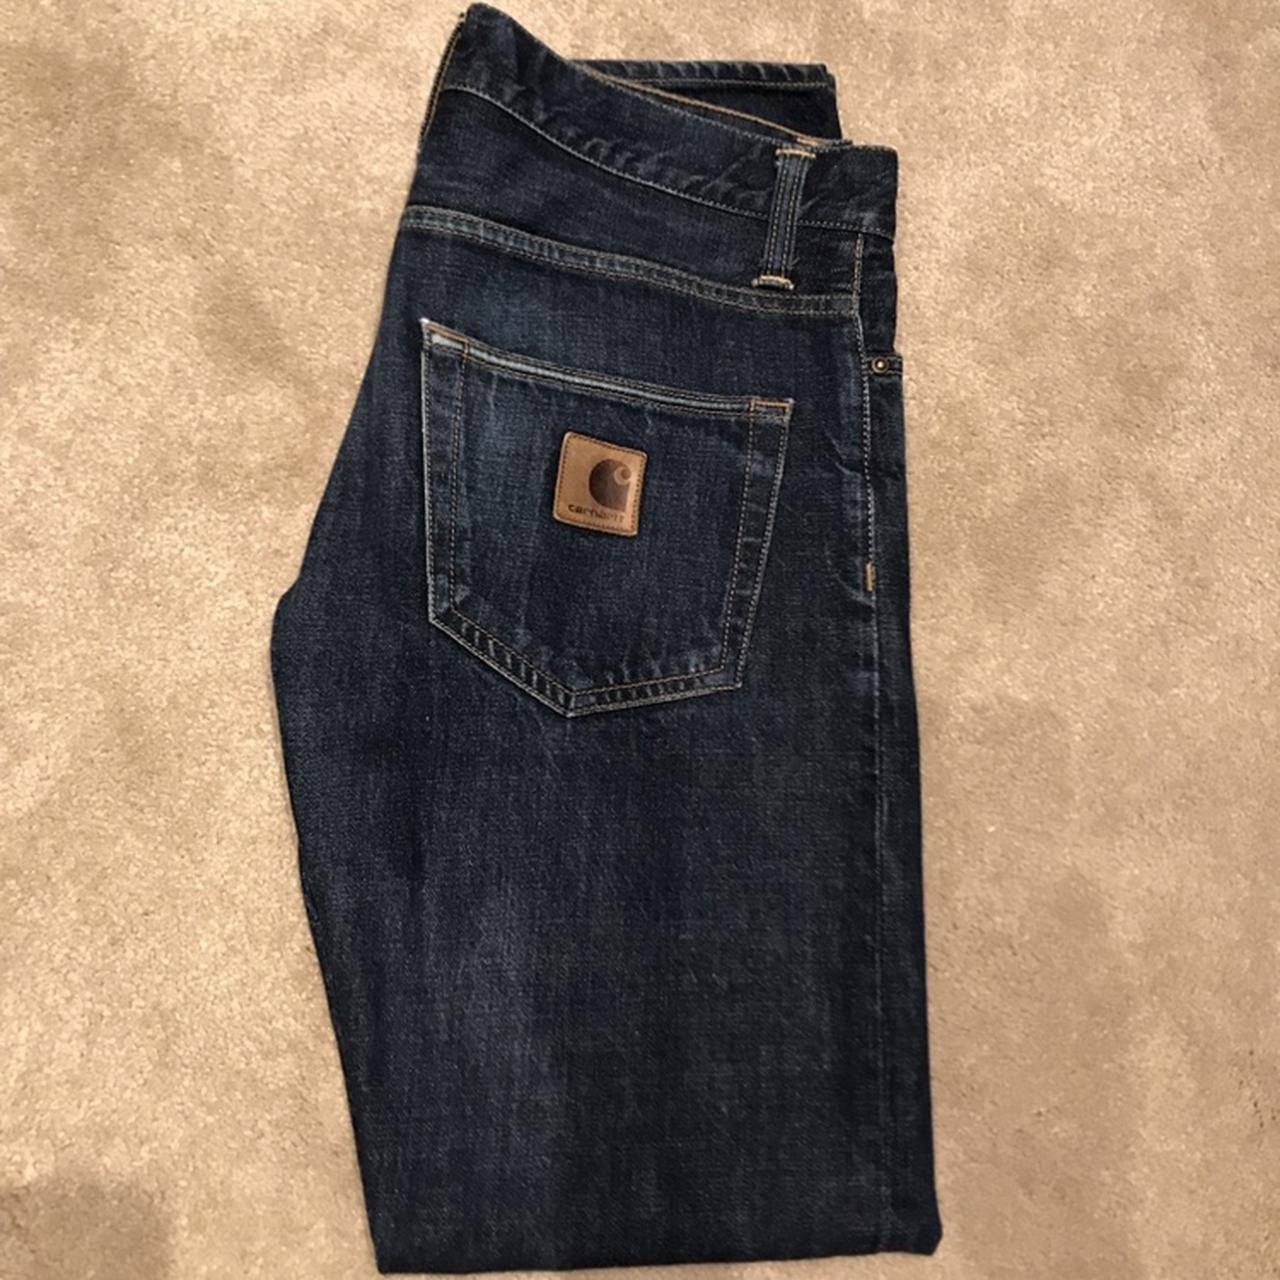 Carhartt Wip Jeans - ‘Klondike Pant II’ • Size 30... - Depop